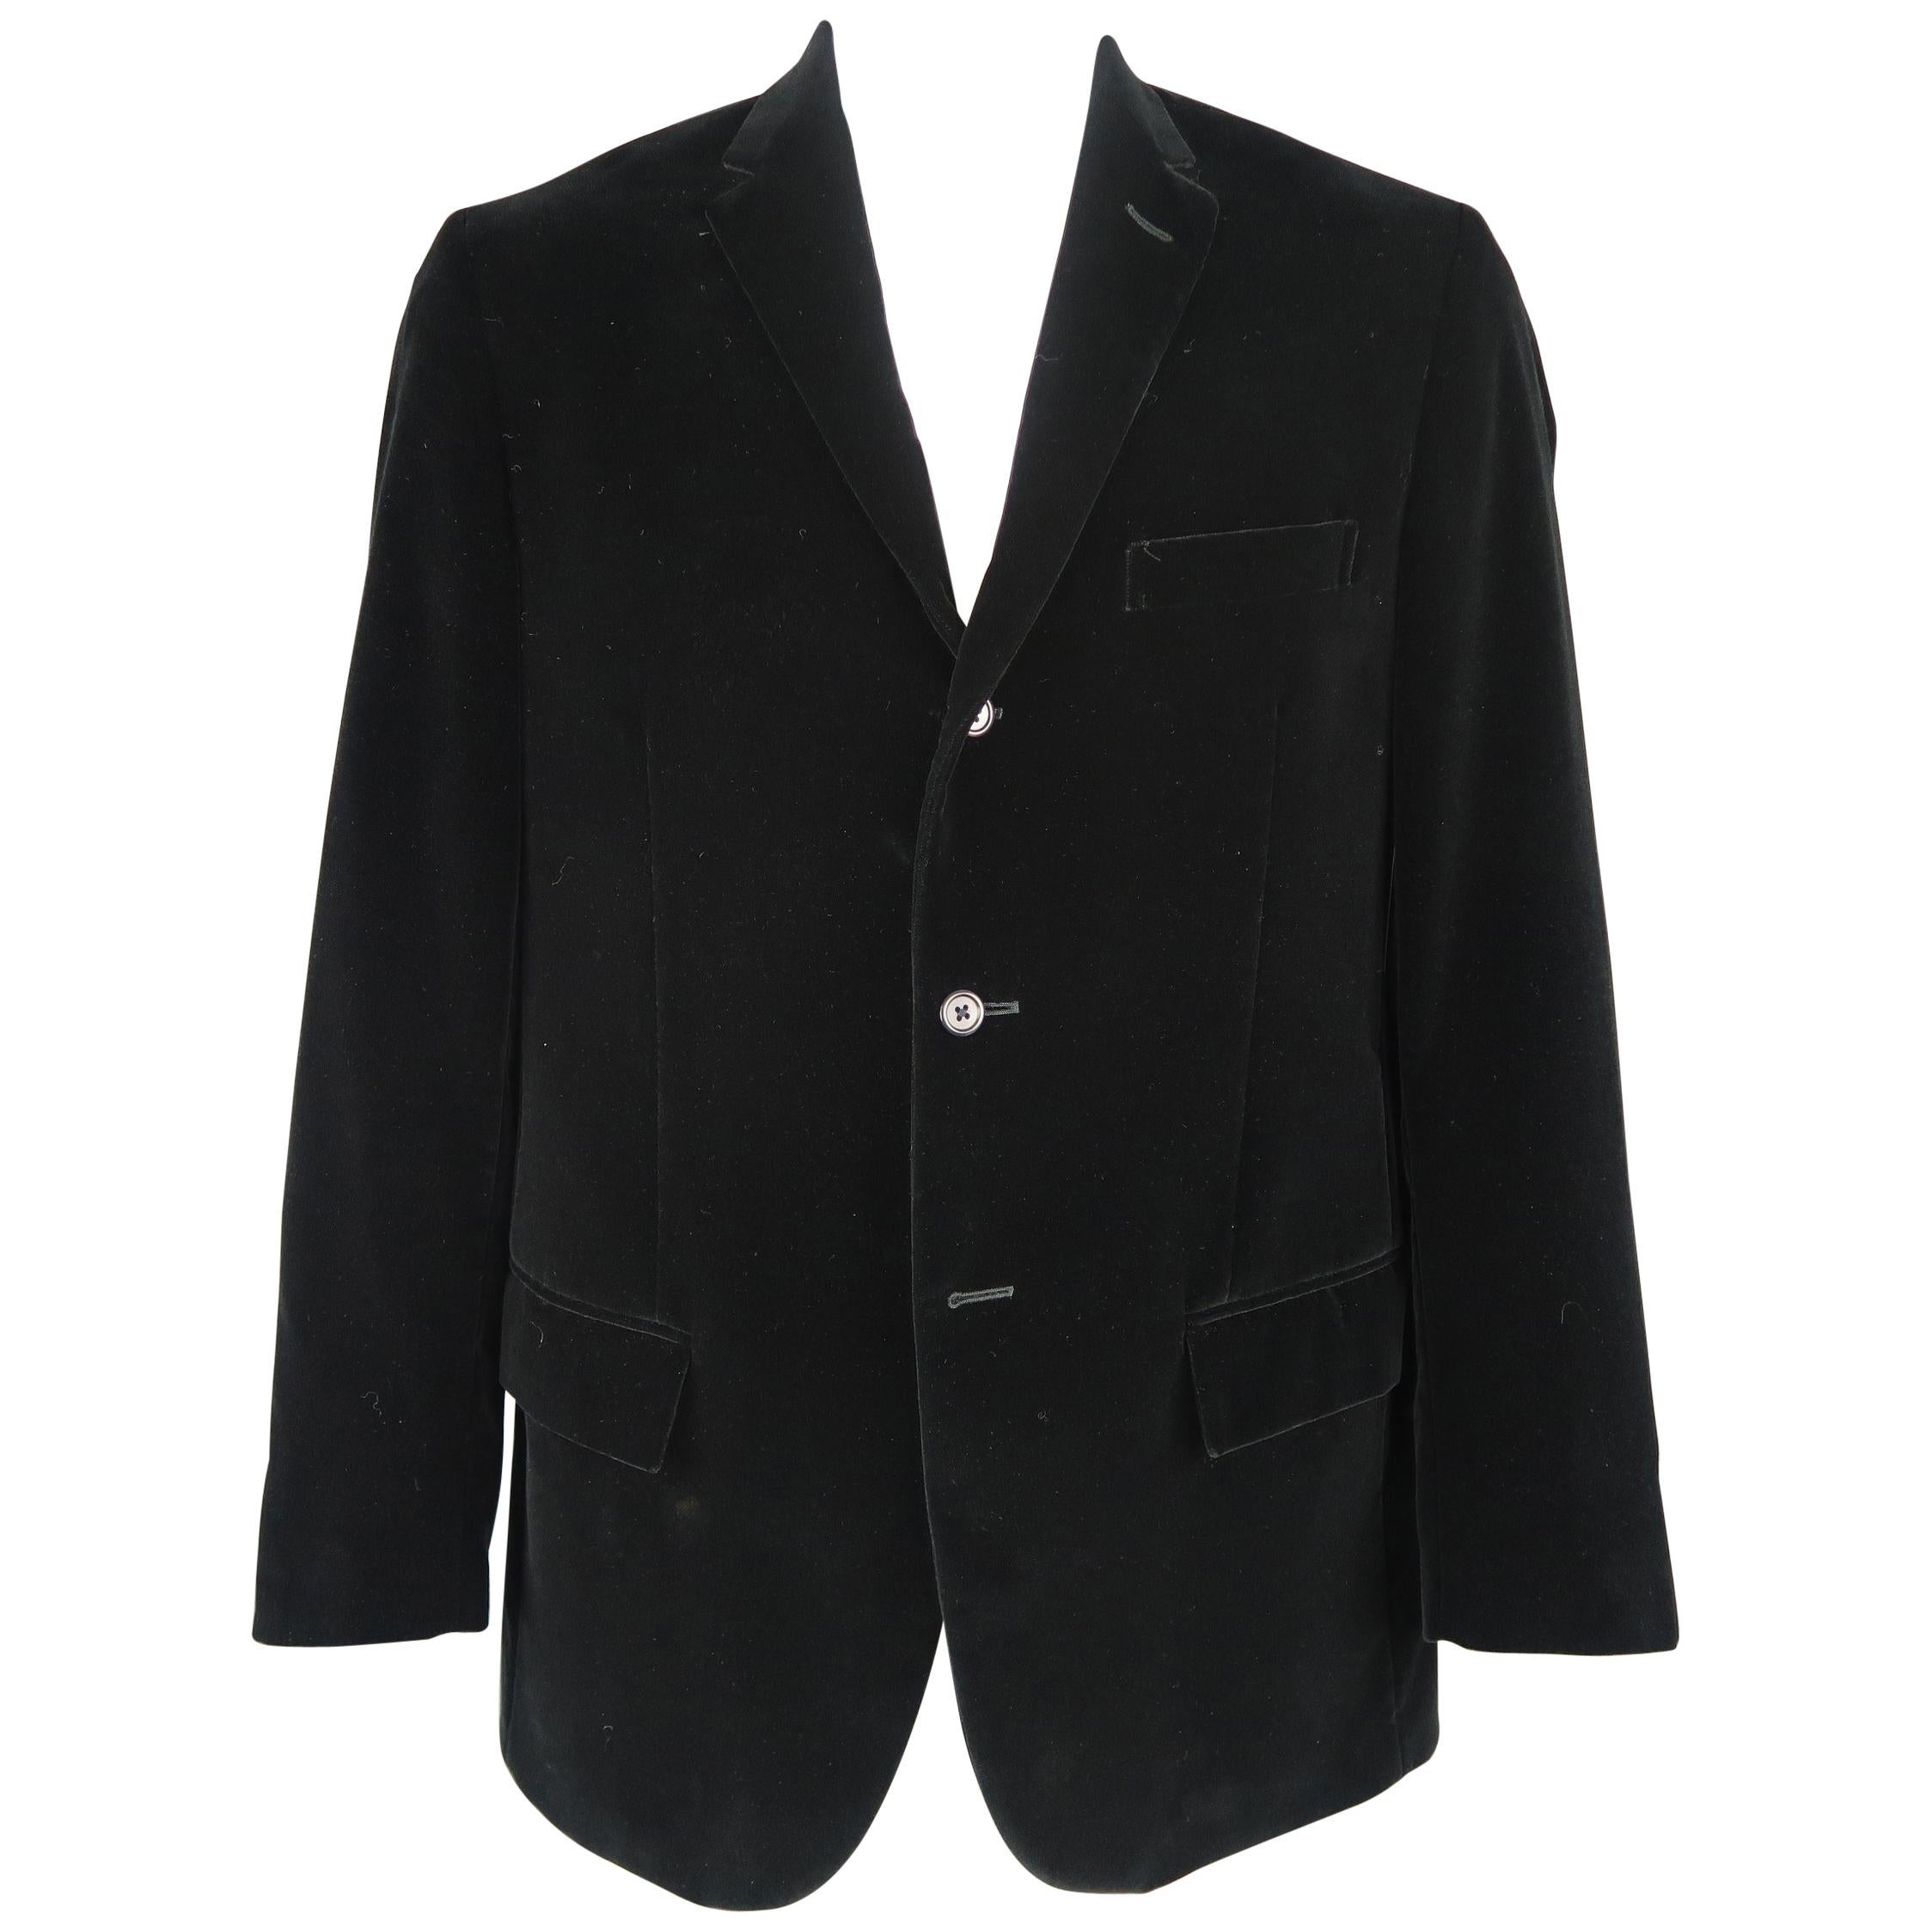 RALPH LAUREN 44 Long Black Cotton Velvet 3 Button Notch Lapel Sport Coat Jacket